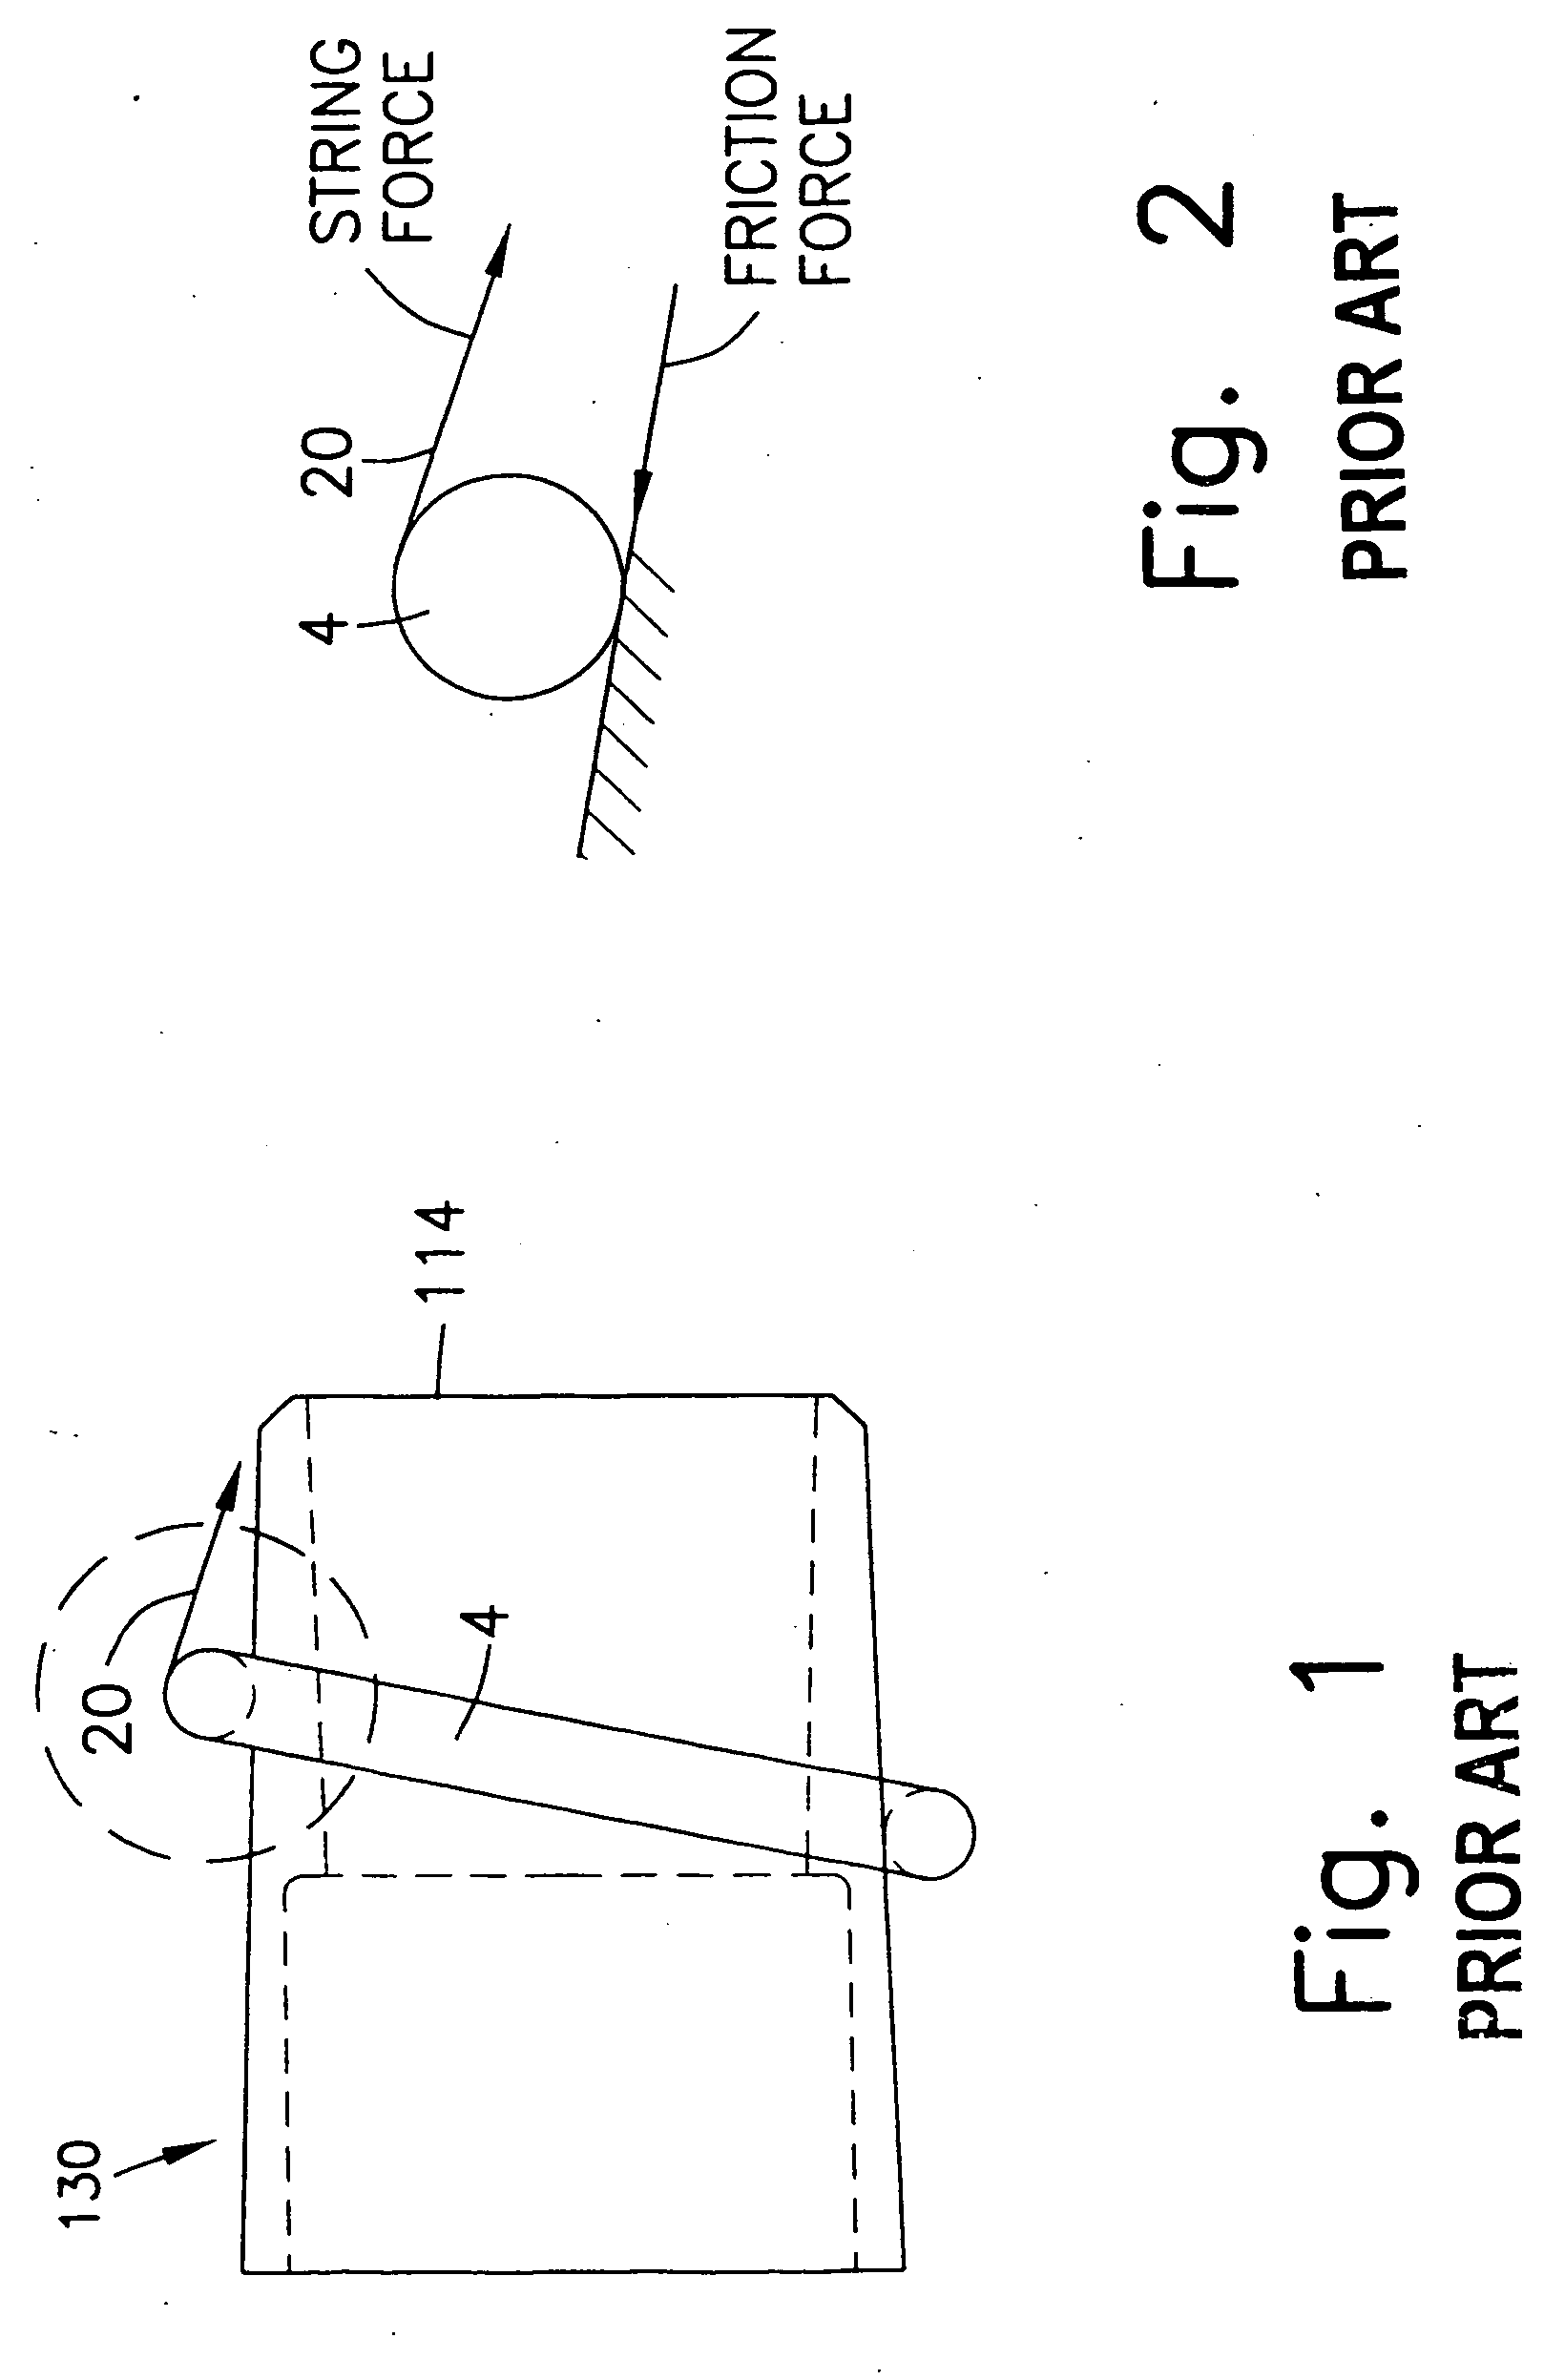 Ligating band dispenser with transverse ridge profile